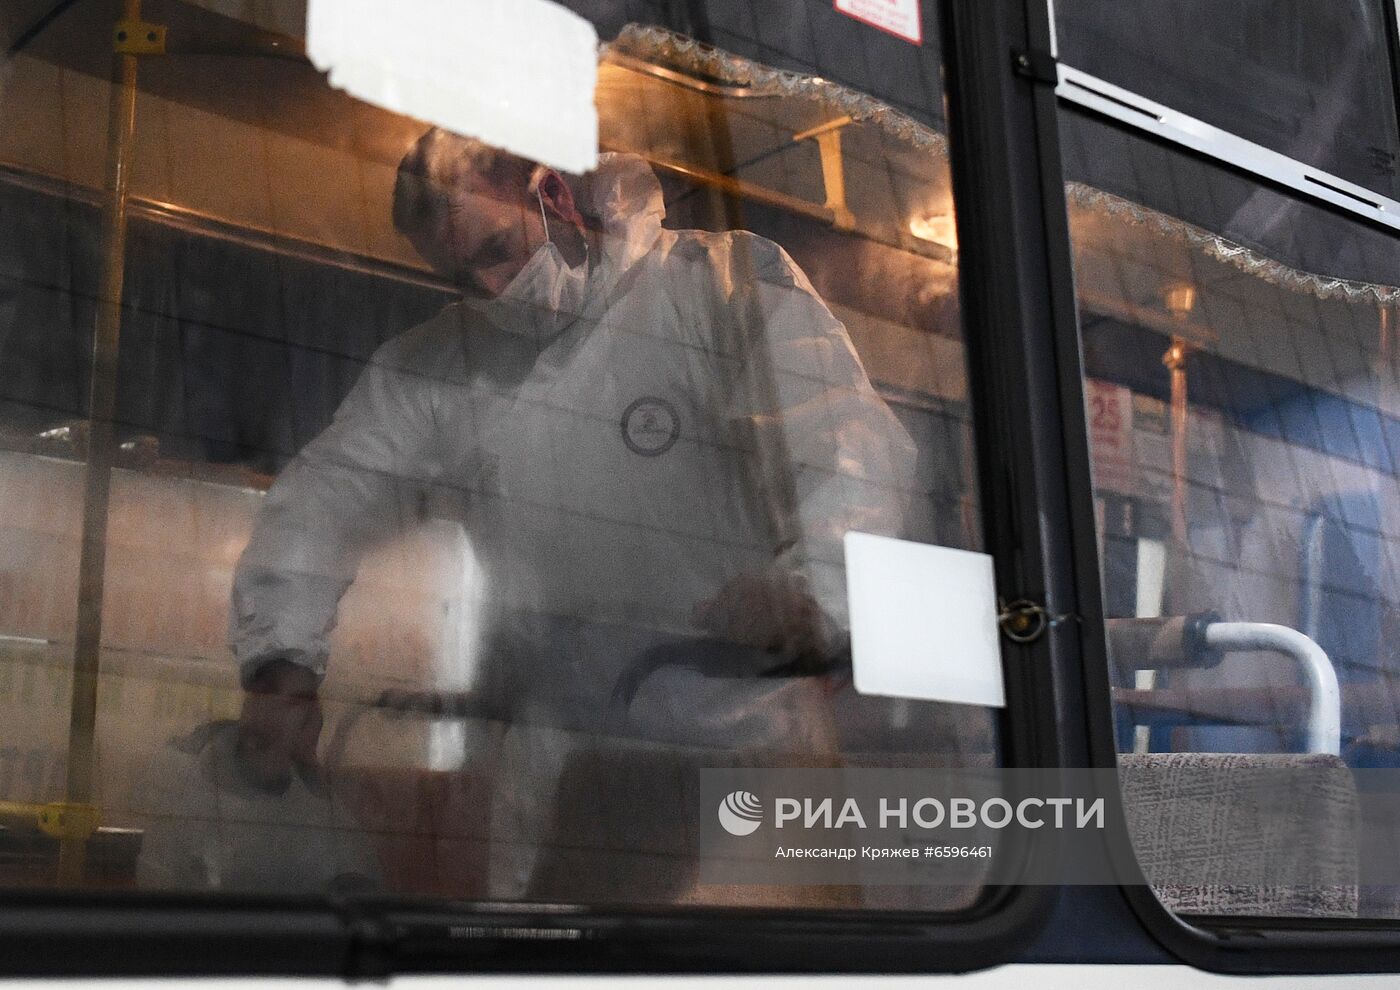 Дезинфеция автобусов в Новосибирске